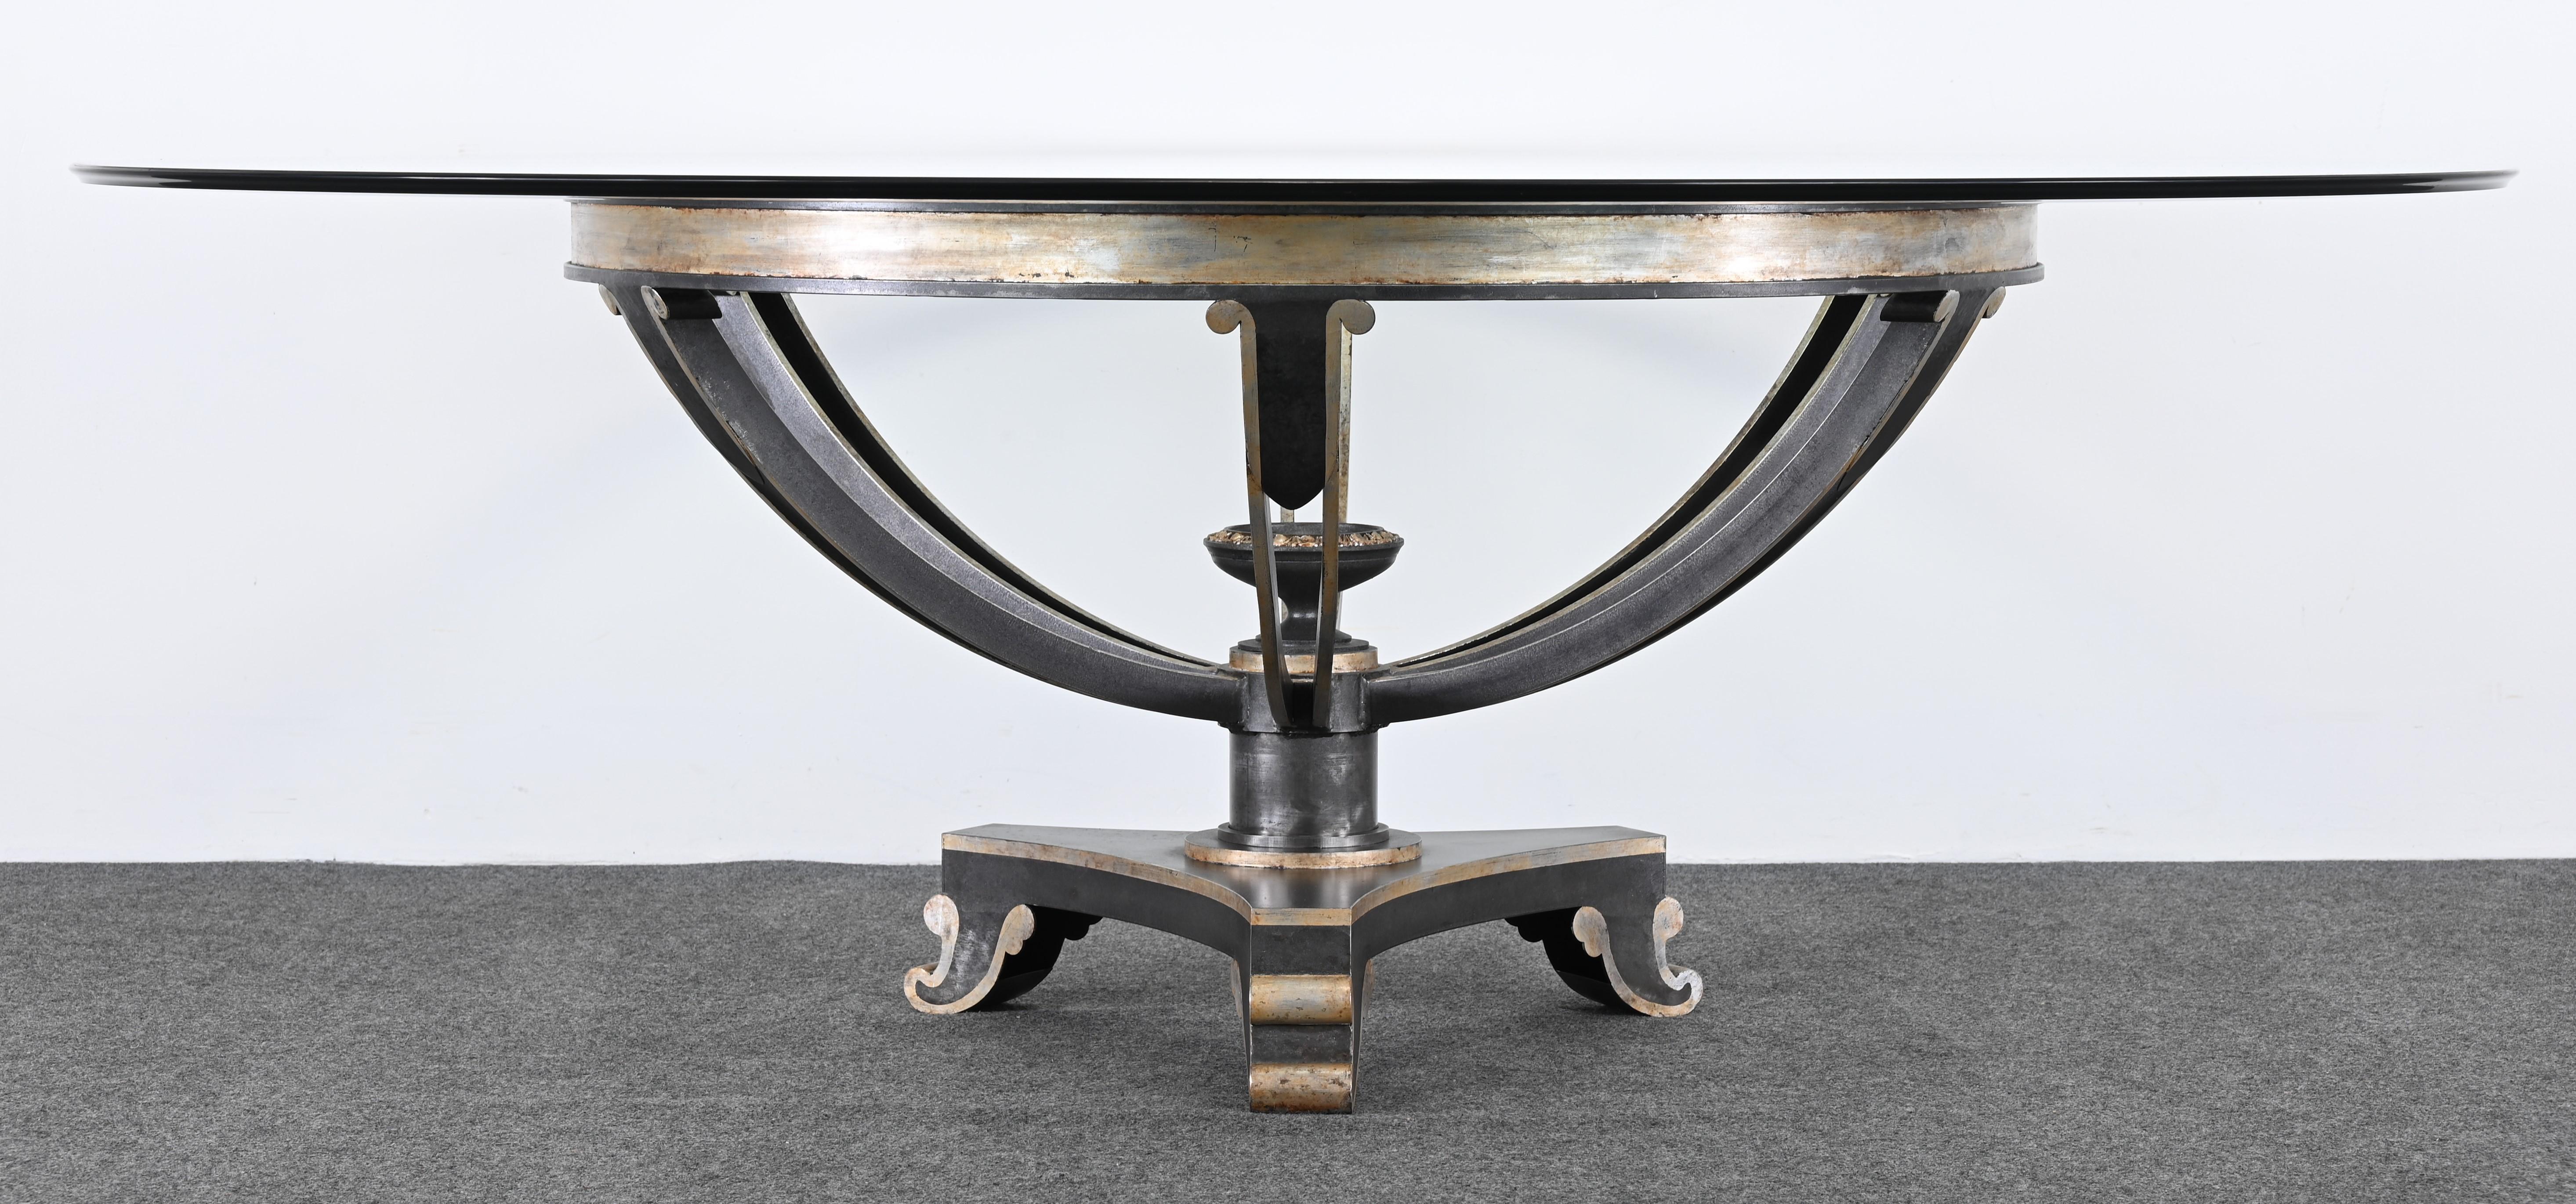 Ein monumentaler Mitteltisch oder Esstisch von Niermann Weeks, bekannt für einzigartige Handwerkskunst und maßgeschneidertes Design. Dieser prächtige Tisch stammt aus der Residenz eines bekannten Kunstsammlers. Der Tisch ist eine Sonderanfertigung